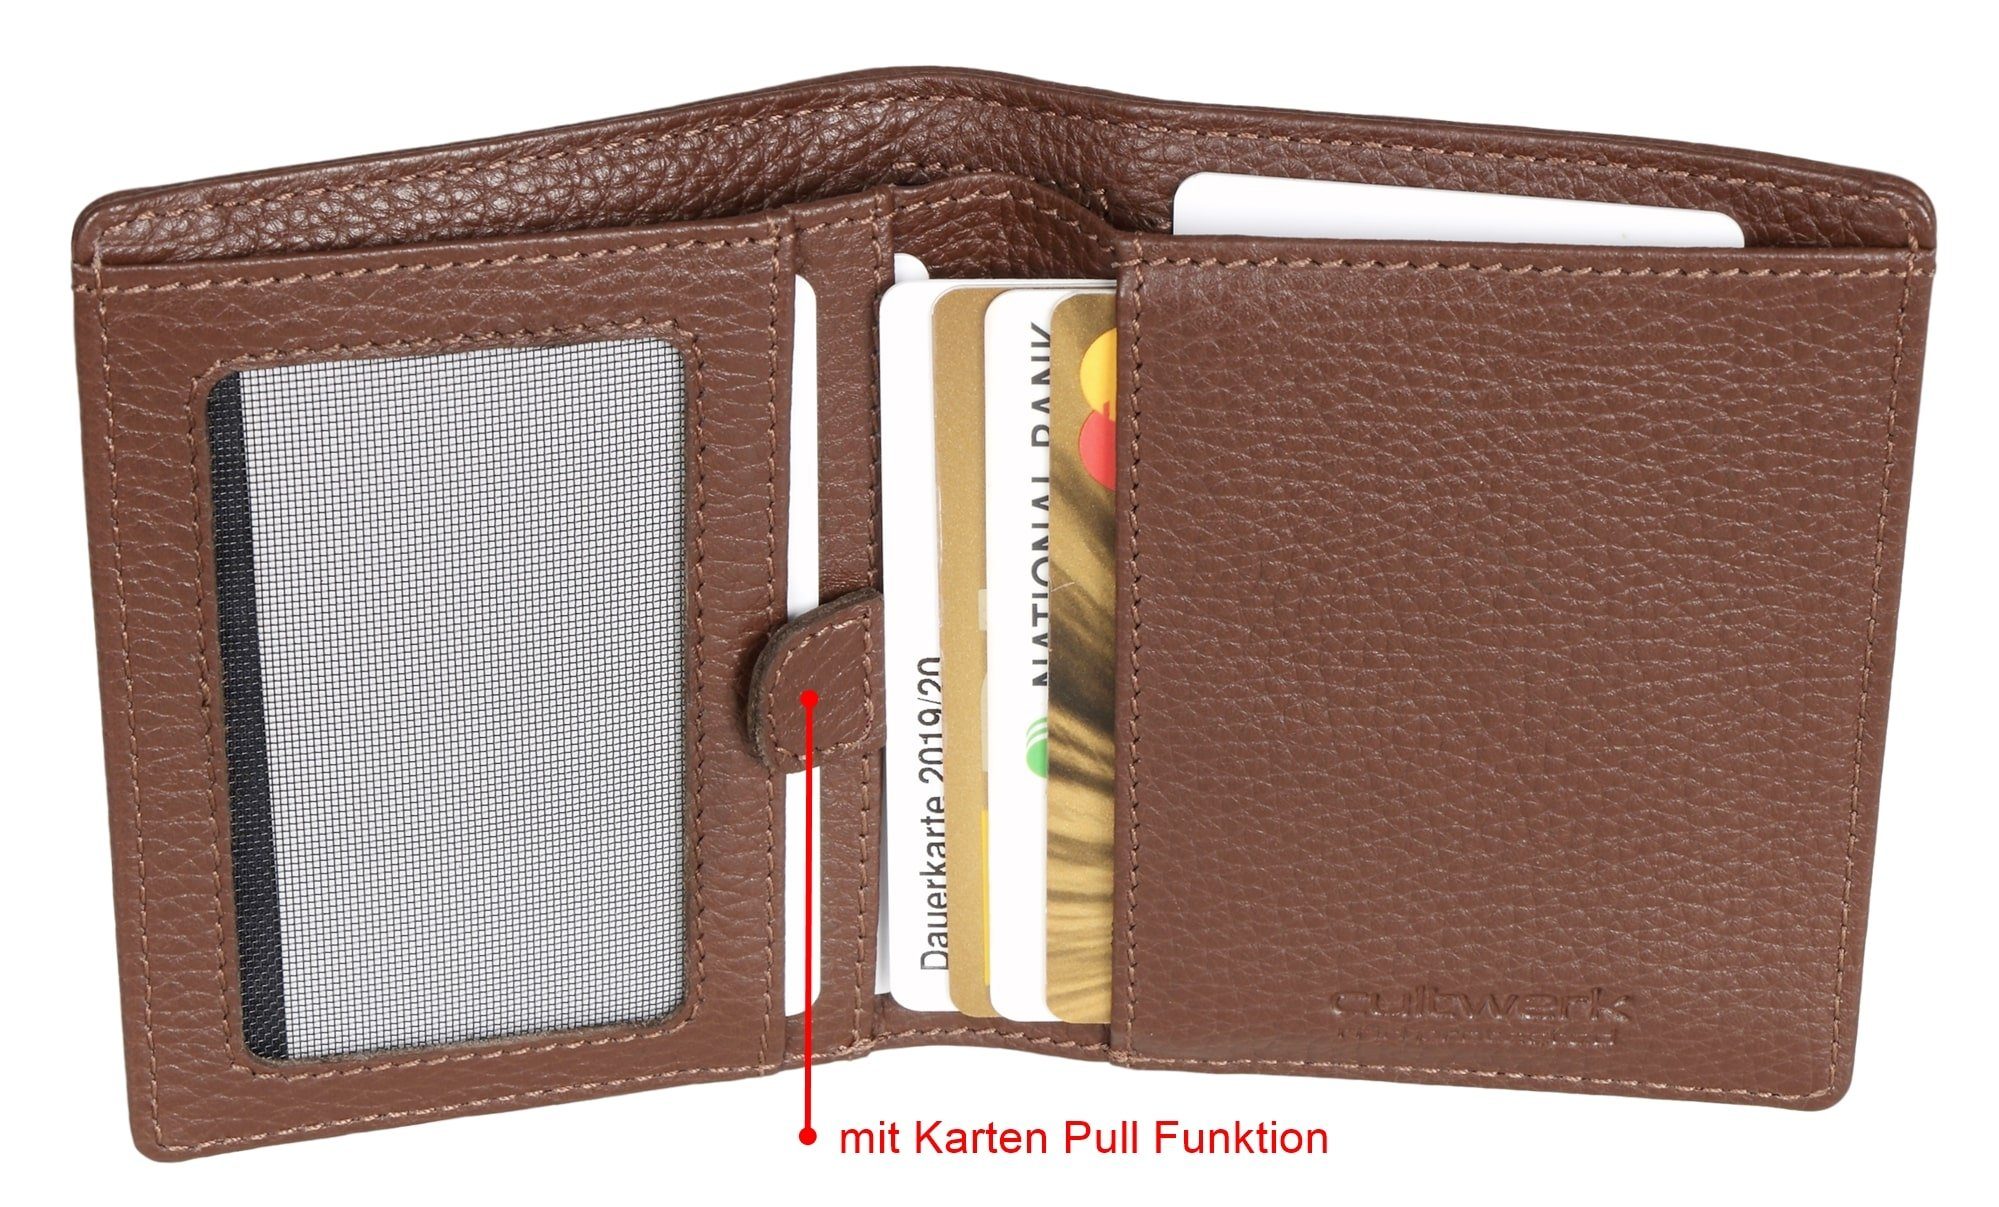 Brown Bear Geldbörse Cultwerk Modell Pull 5 Kartenfächern, Card für und Braun-Espresso Echtleder RFID-Schutz mit Herren aus mit Braun Farbe Funktion IV